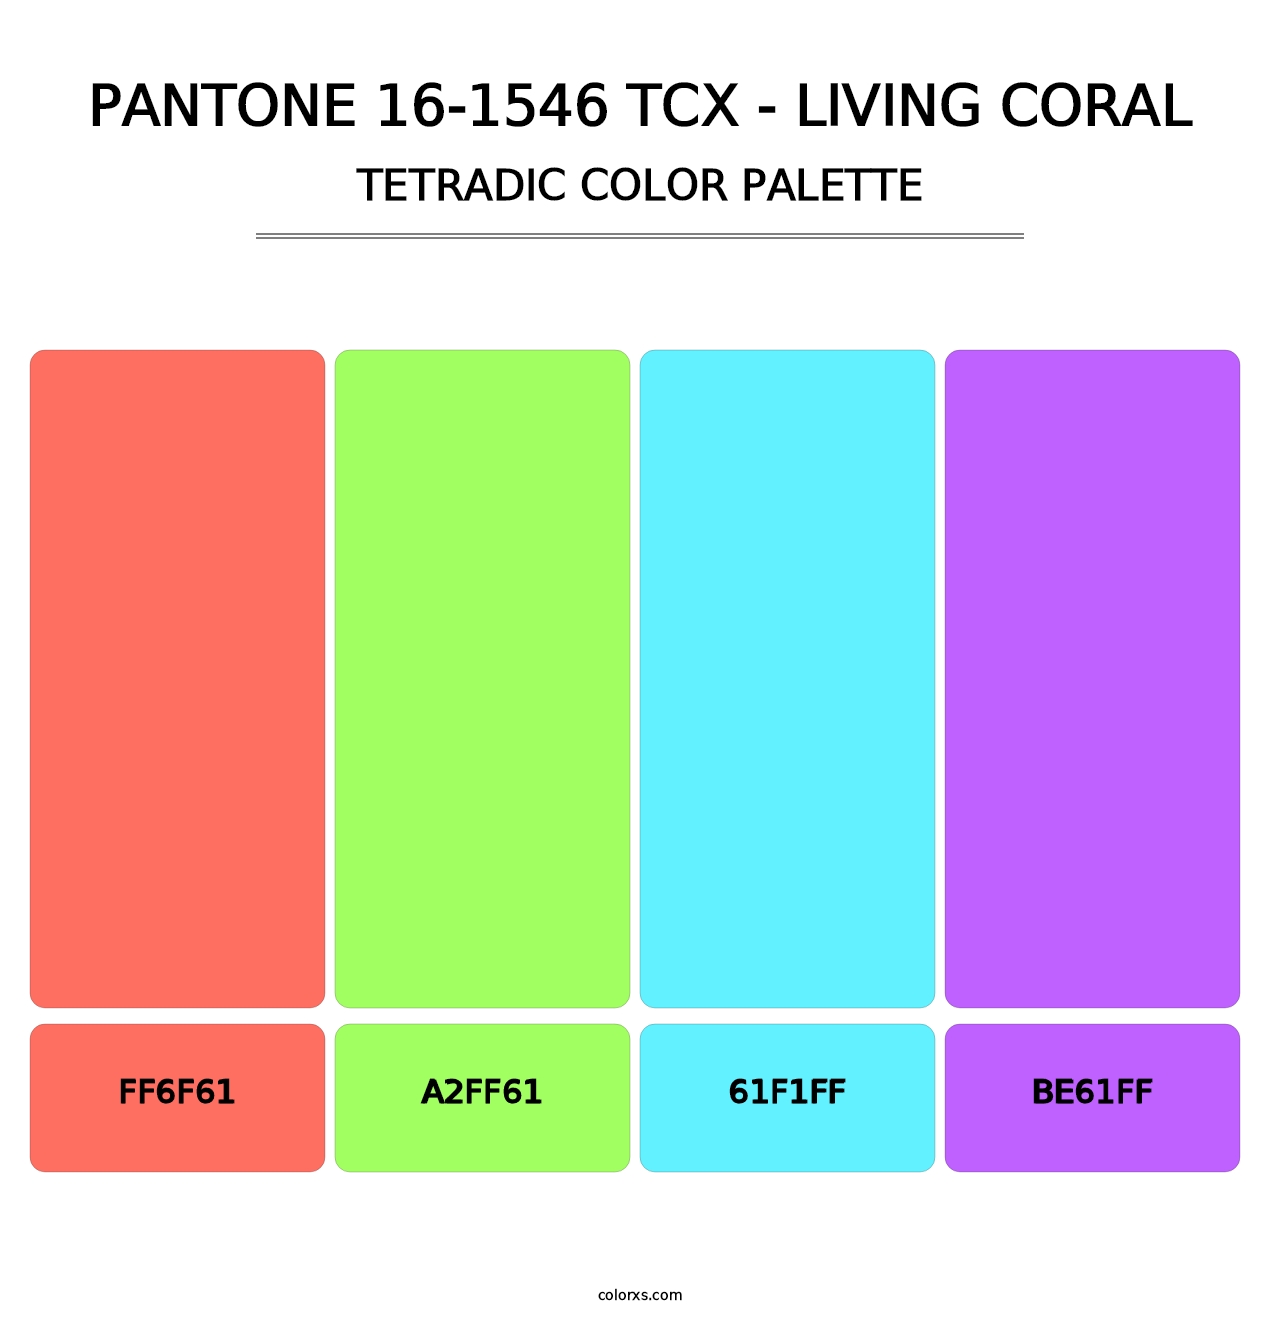 PANTONE 16-1546 TCX - Living Coral - Tetradic Color Palette